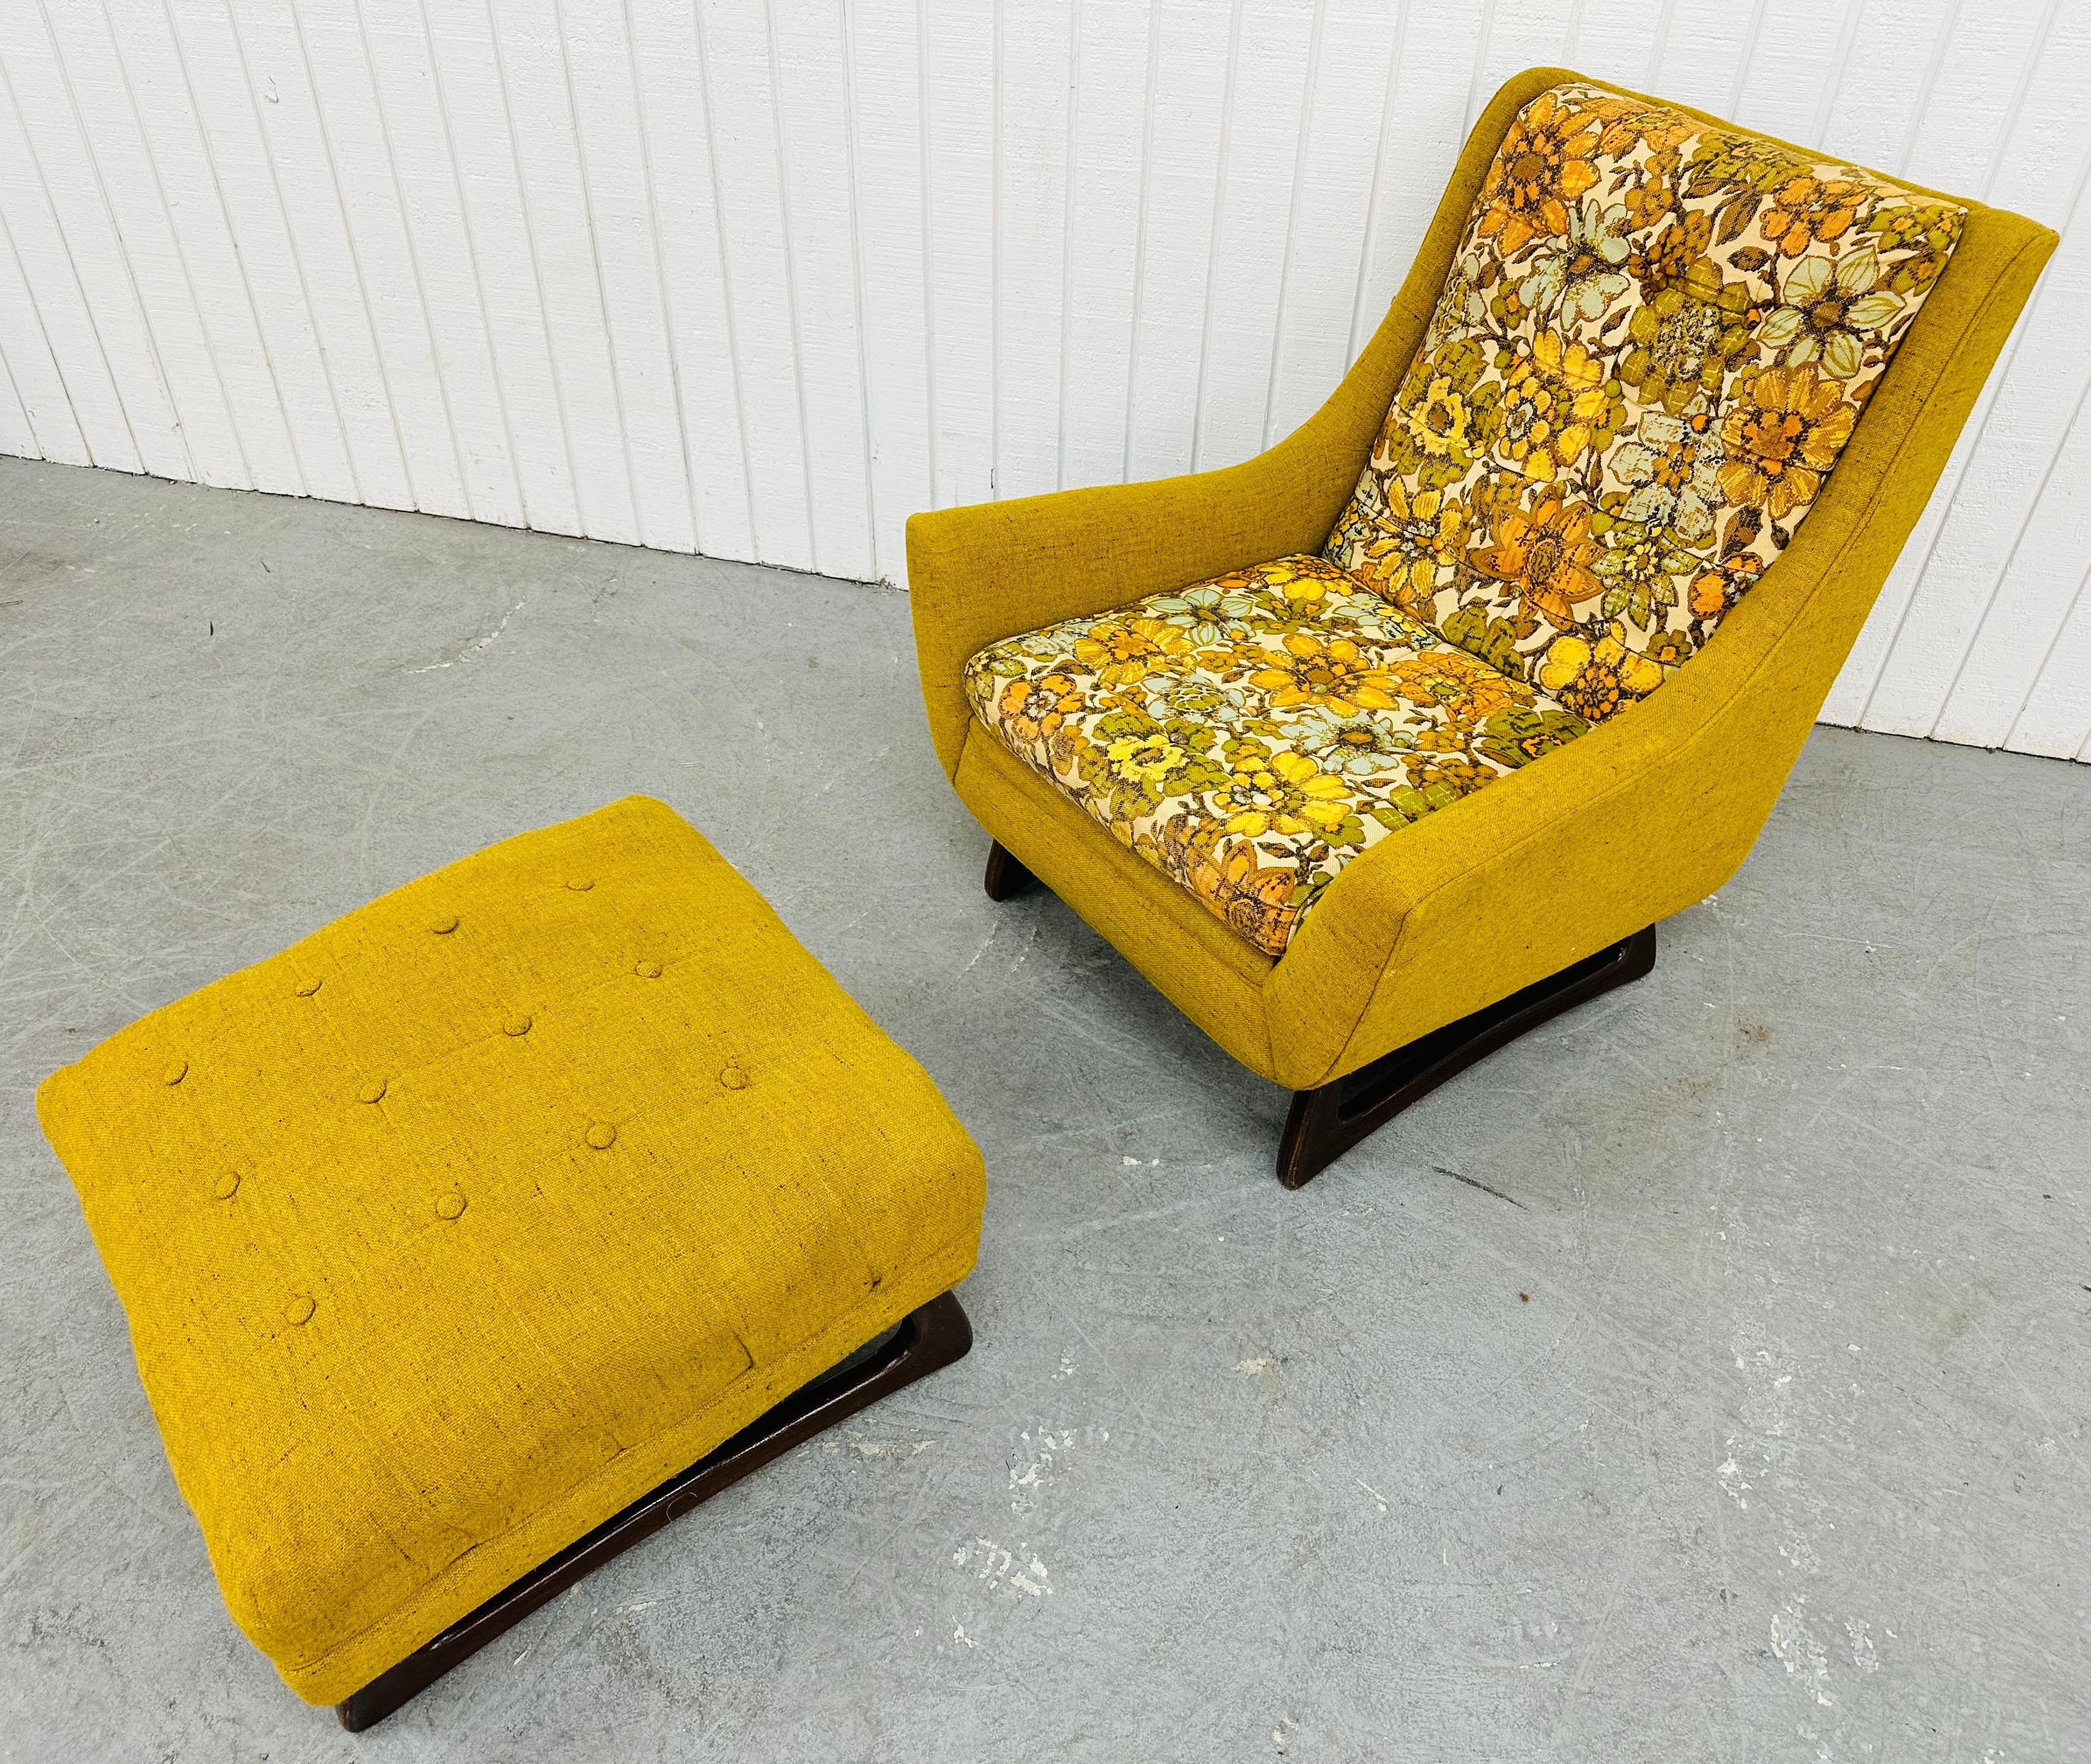 Dieses Angebot ist für einen Mid-Century Modern Adrian Pearsall Style Lounge Chair. Mit einem Entwurf von Adrian Pearsall, einer originellen gelb-blumigen Polsterung und skulpturalen Beinen aus Walnussholz. Dies ist eine außergewöhnliche Kombination